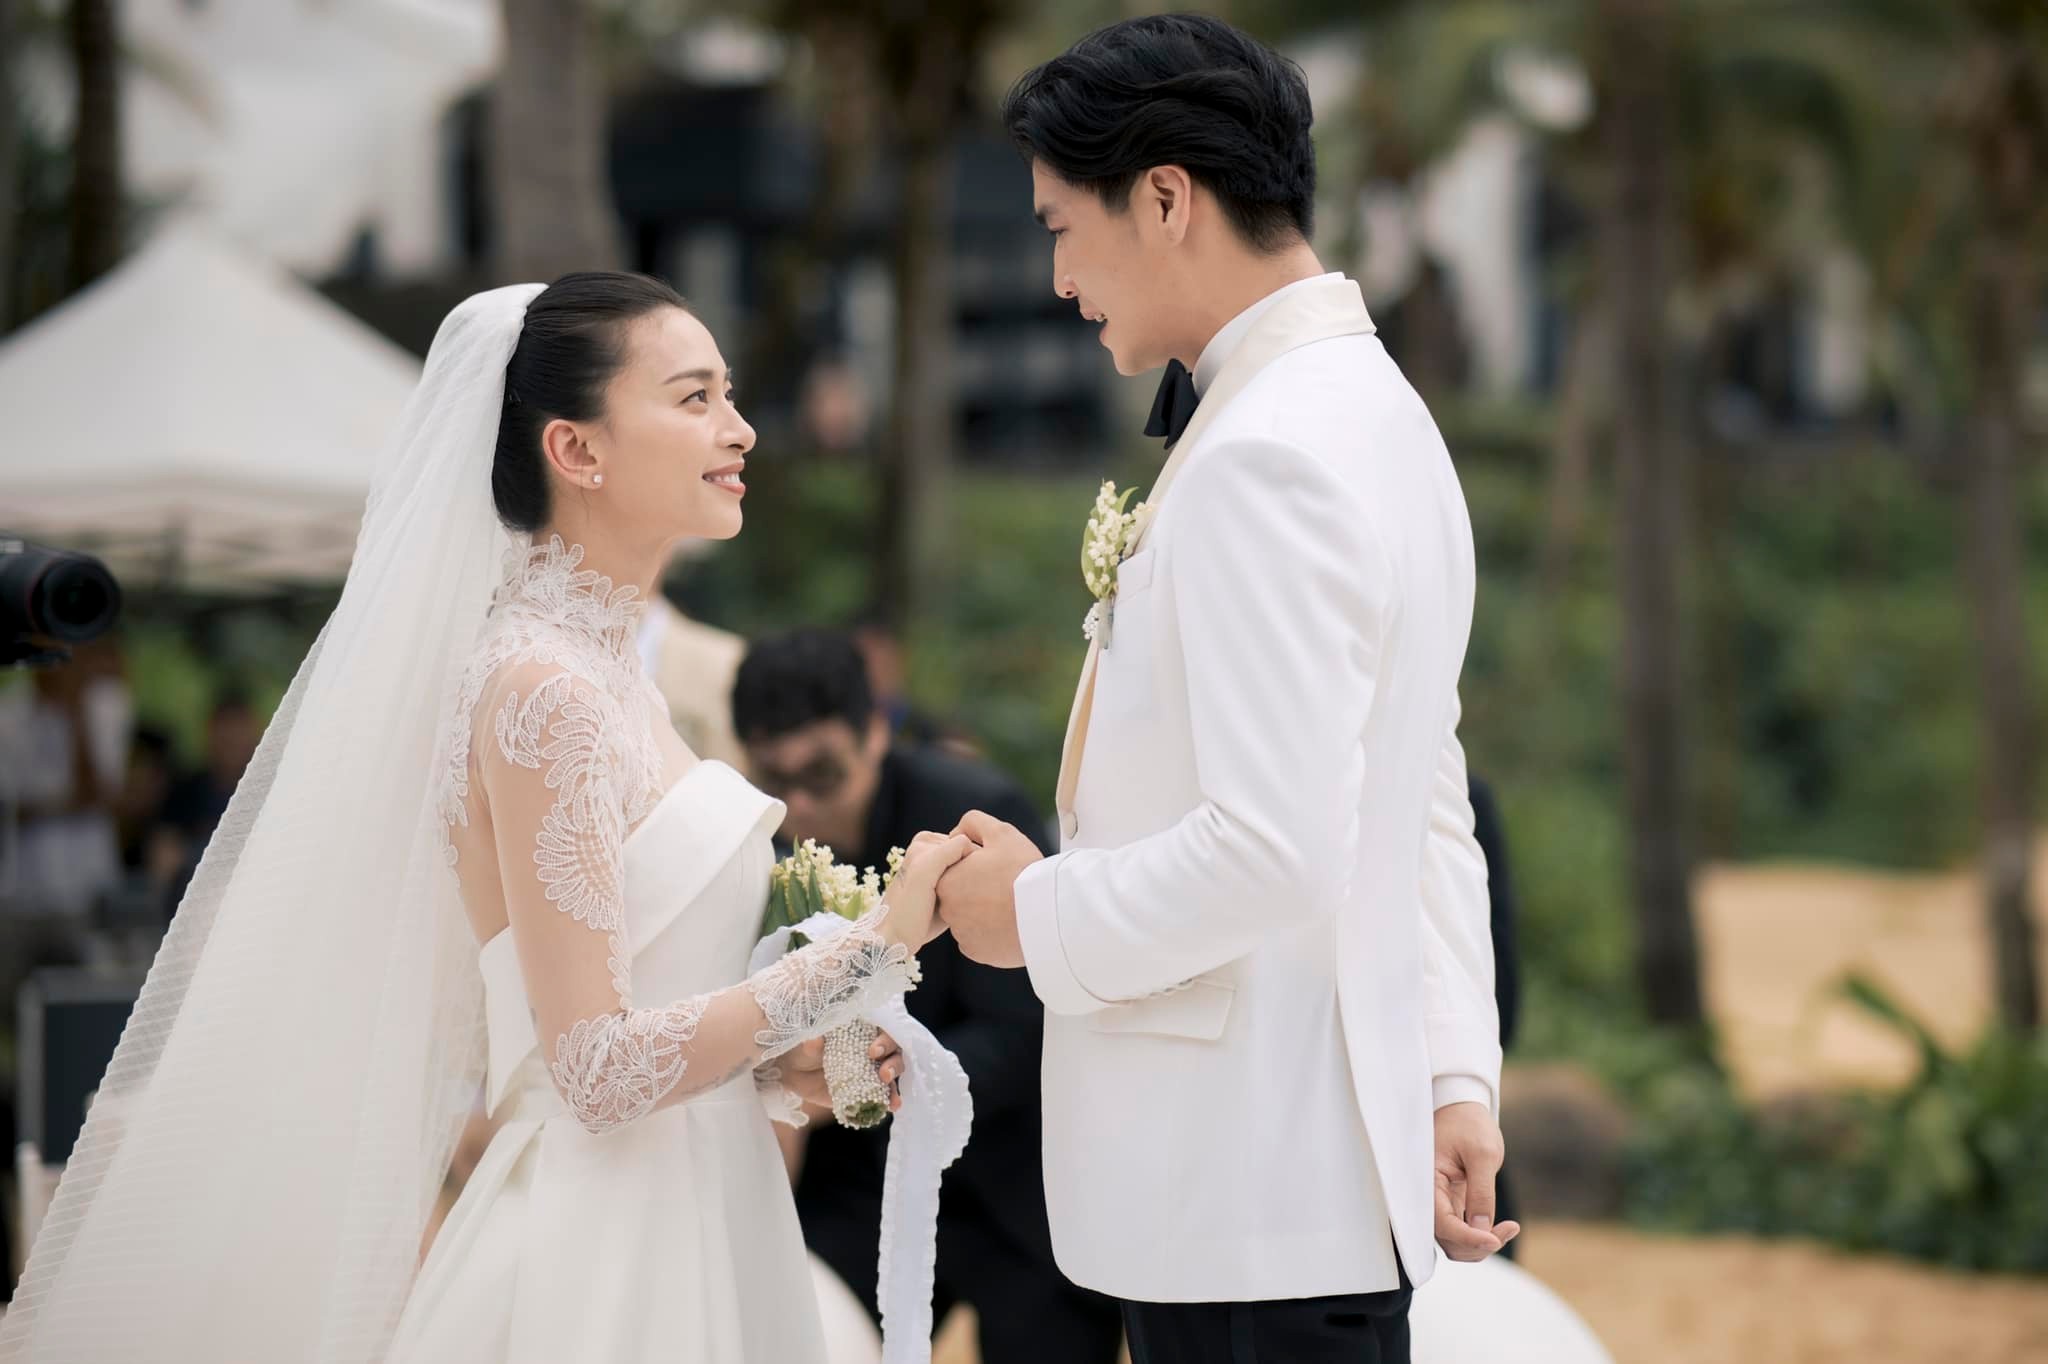 Cưới chồng trẻ chưa lâu, Ngô Thanh Vân bỗng đăng vu vơ bài hát 'Ai chung tình được mãi' khiến fan hoang mang - ảnh 1